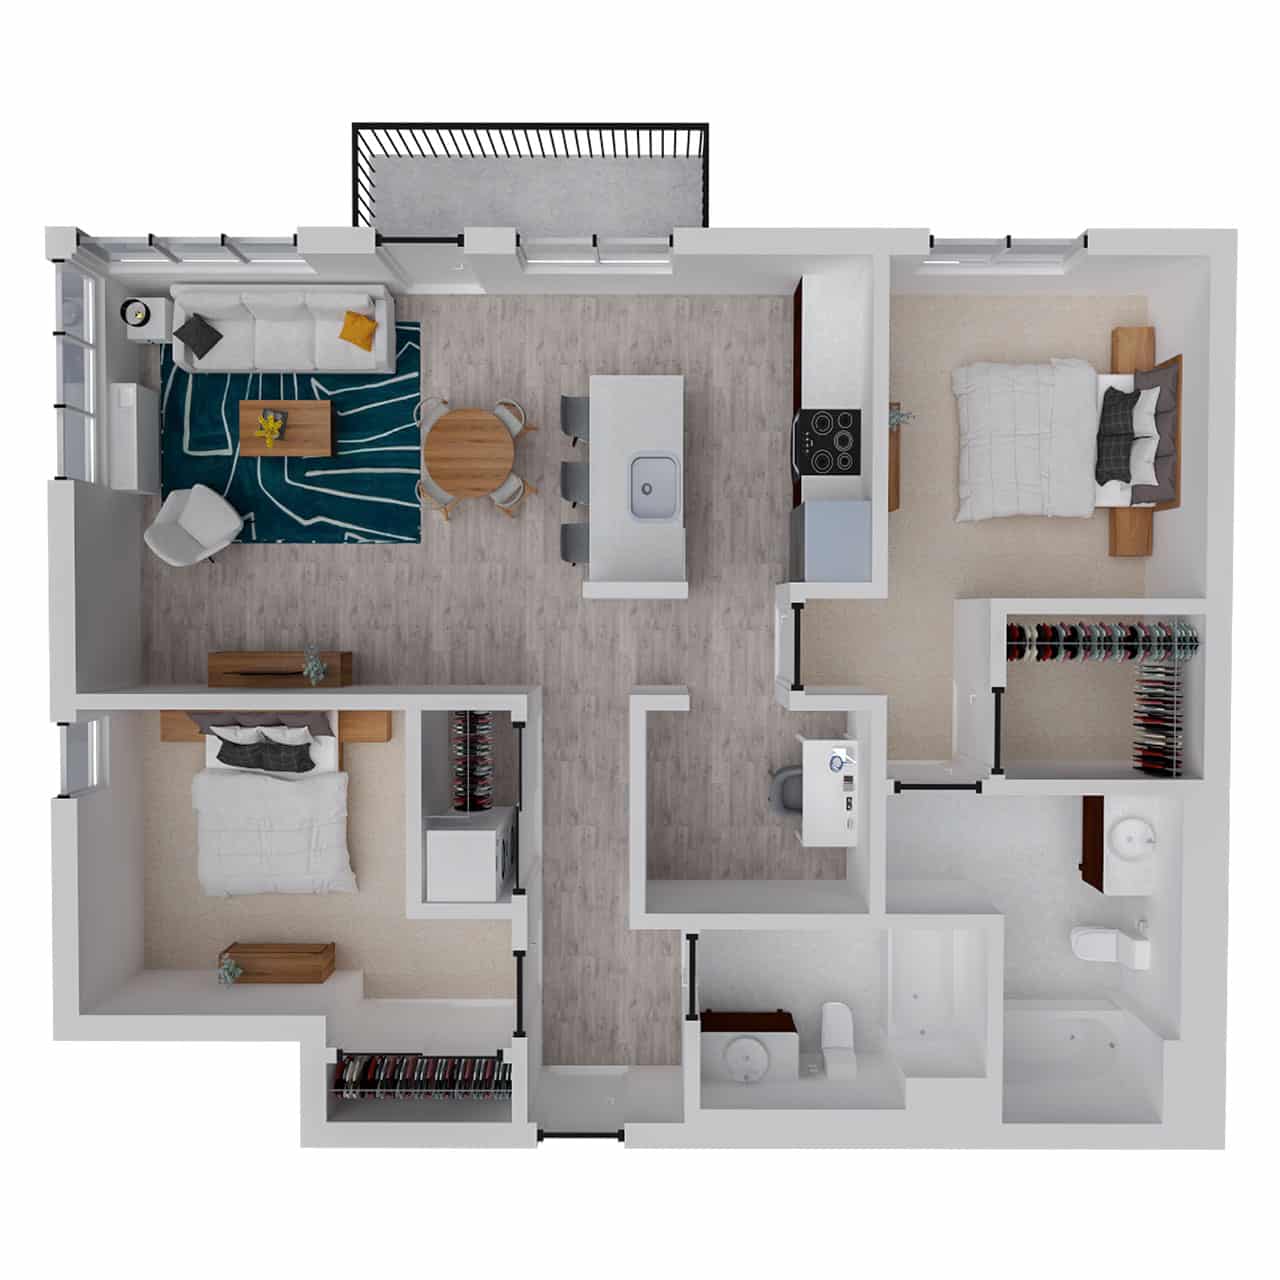 Attwell, B11 + Den floor plan, 2 bedroom, 2 bath.